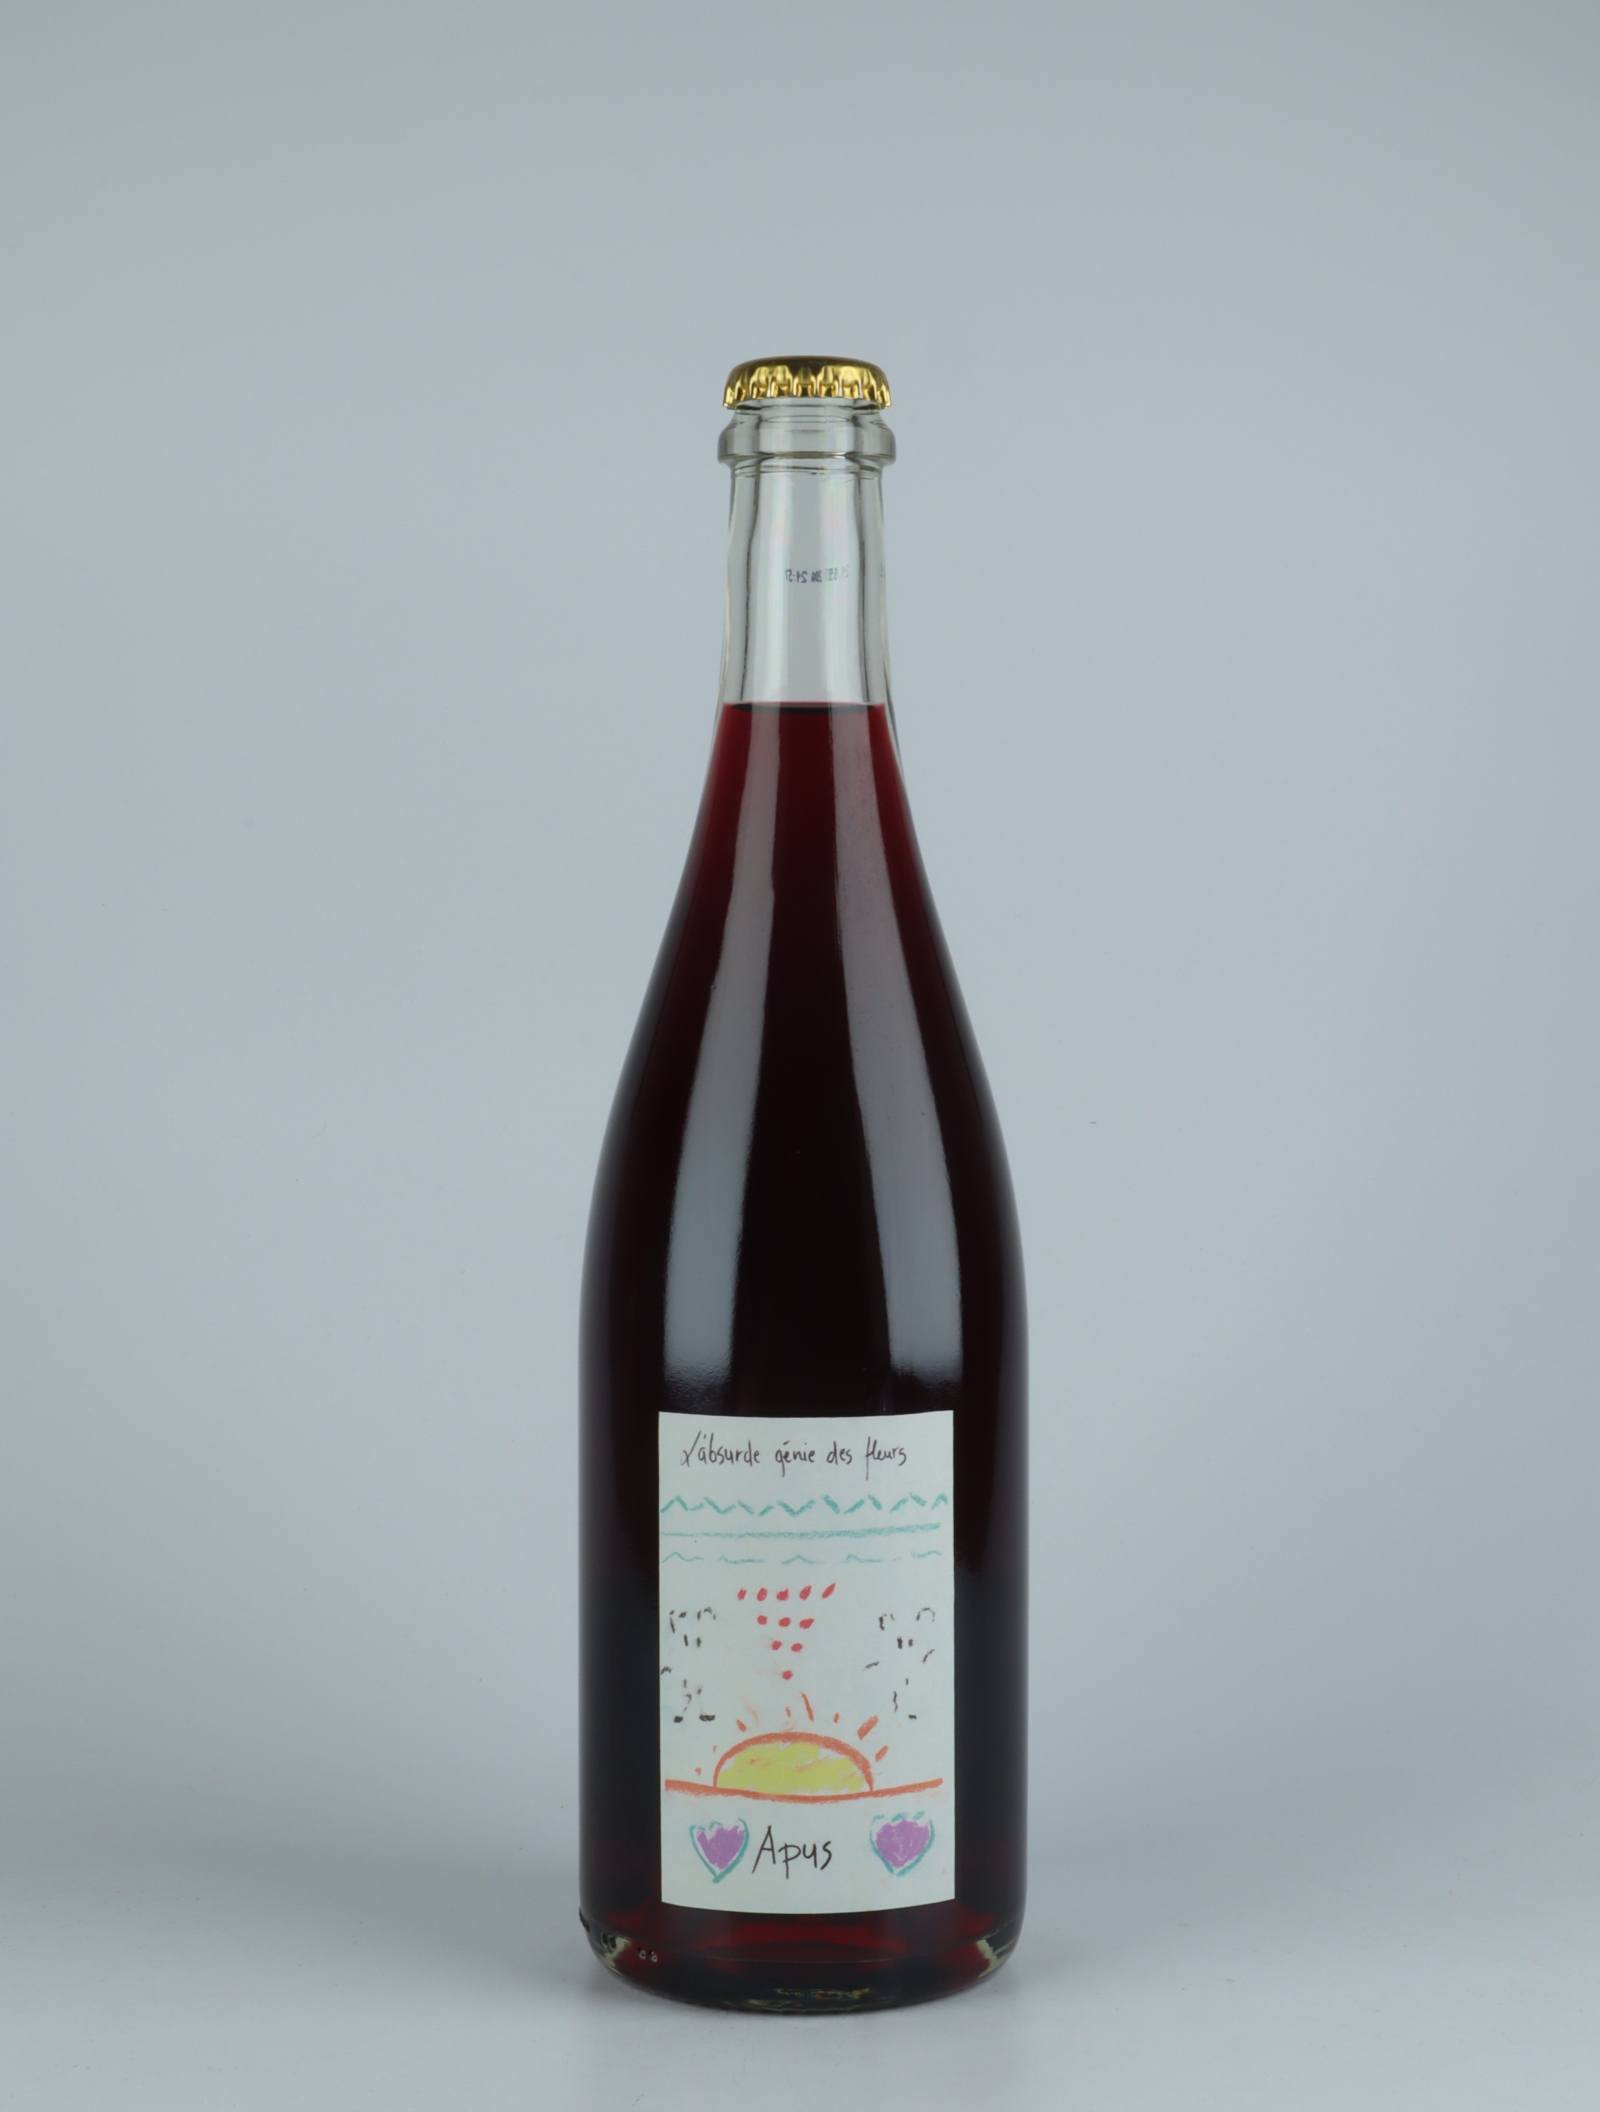 En flaske 2020 Apus Rødvin fra Absurde Génie des Fleurs, Languedoc i Frankrig